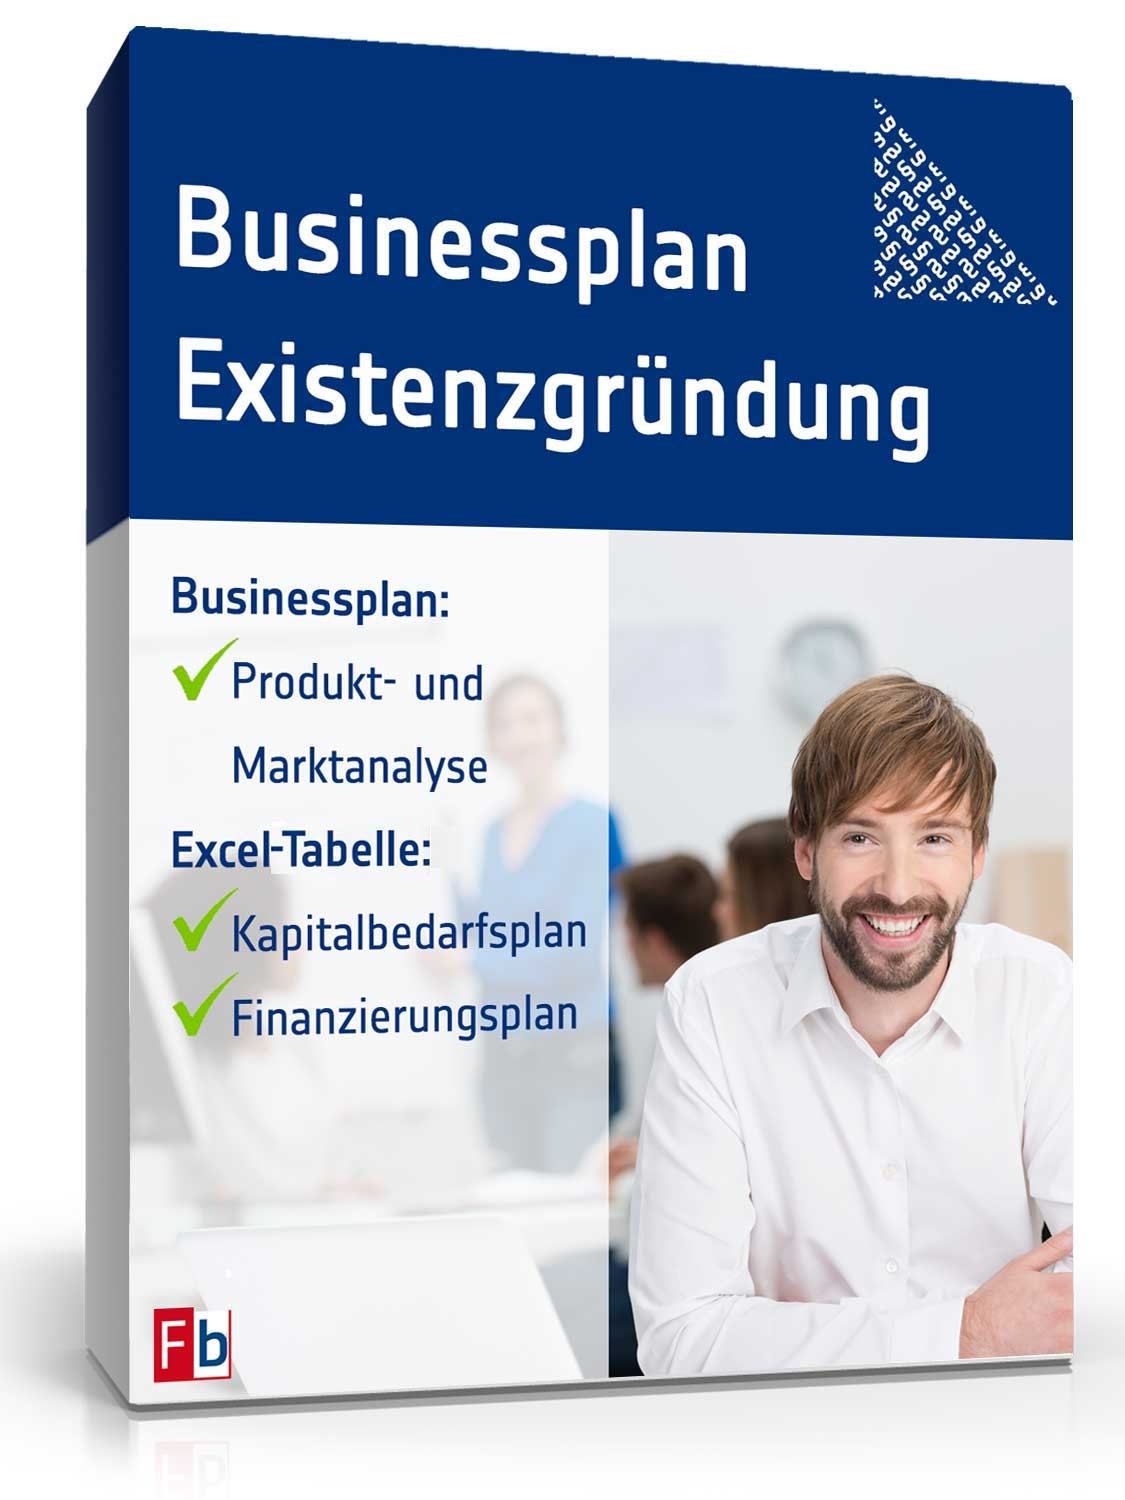 Hauptbild des Produkts: Businessplan Existenzgründung